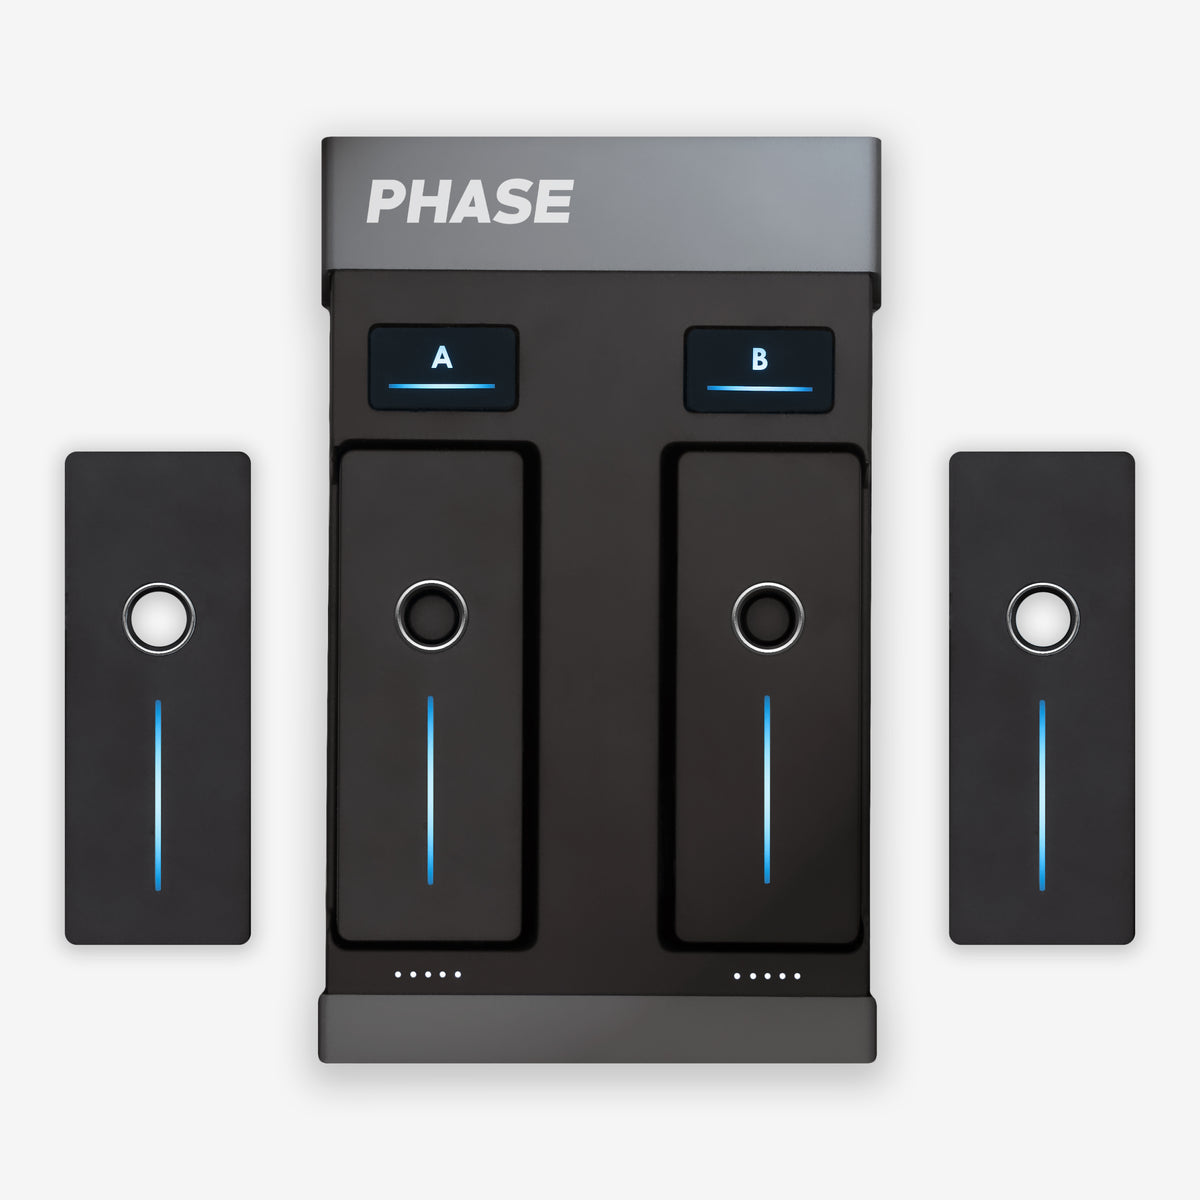 Phase Ultimate - 위상 컨트롤러 궁극